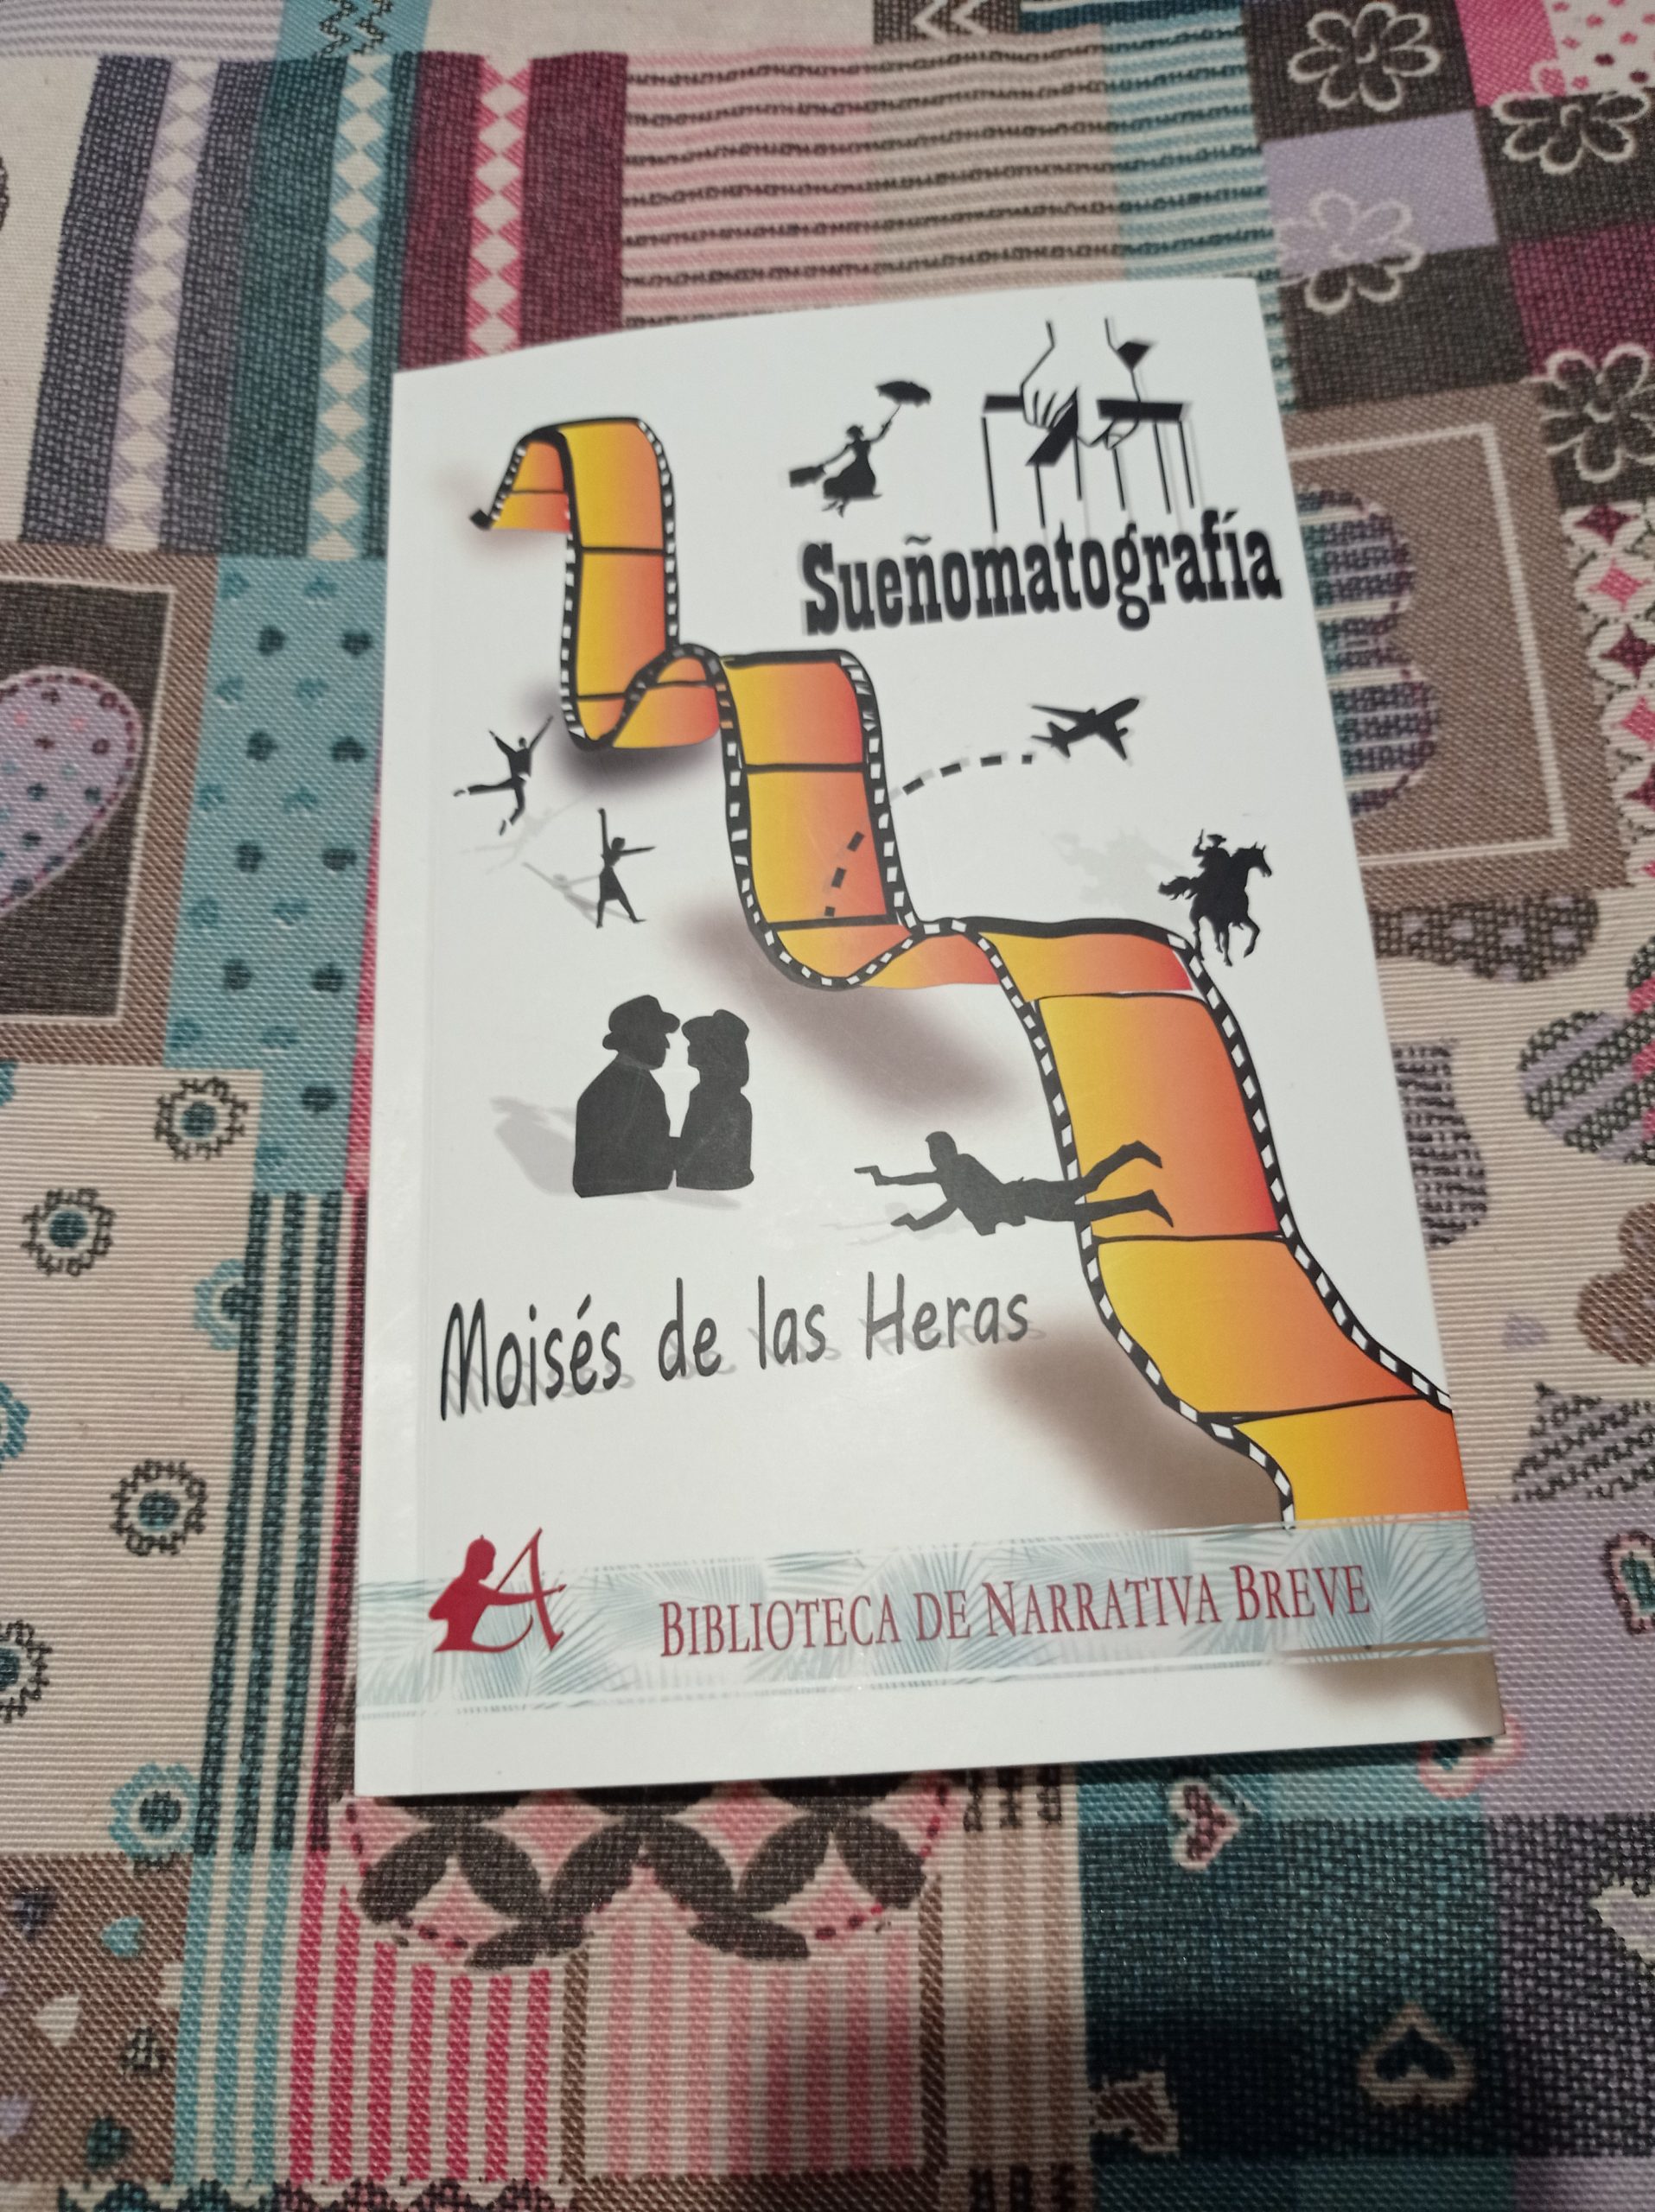 Reseña de “Sueñomatografía”, de Moisés de las Heras | Por Raquel María González Vázquez